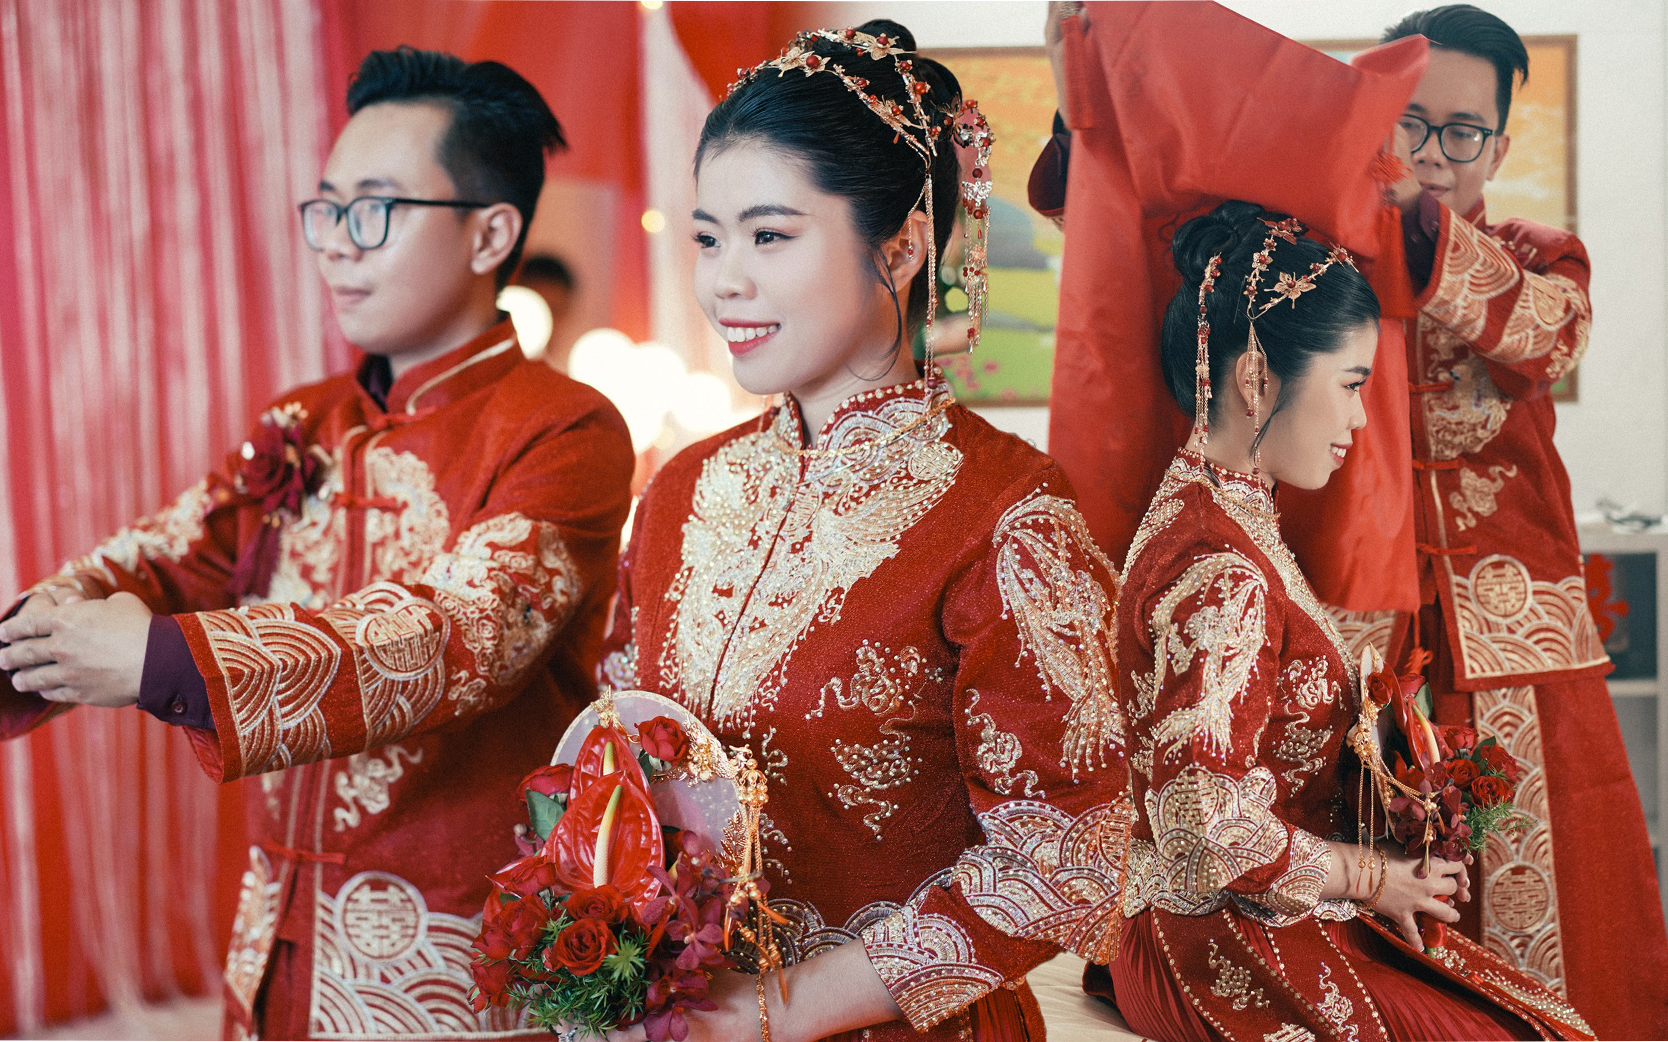 Đám cưới người Hoa với tổng chi phí 300 triệu tại An Giang: Tỉ mỉ từ cách chọn hoa cưới đến trang phục cô dâu - Ảnh 2.